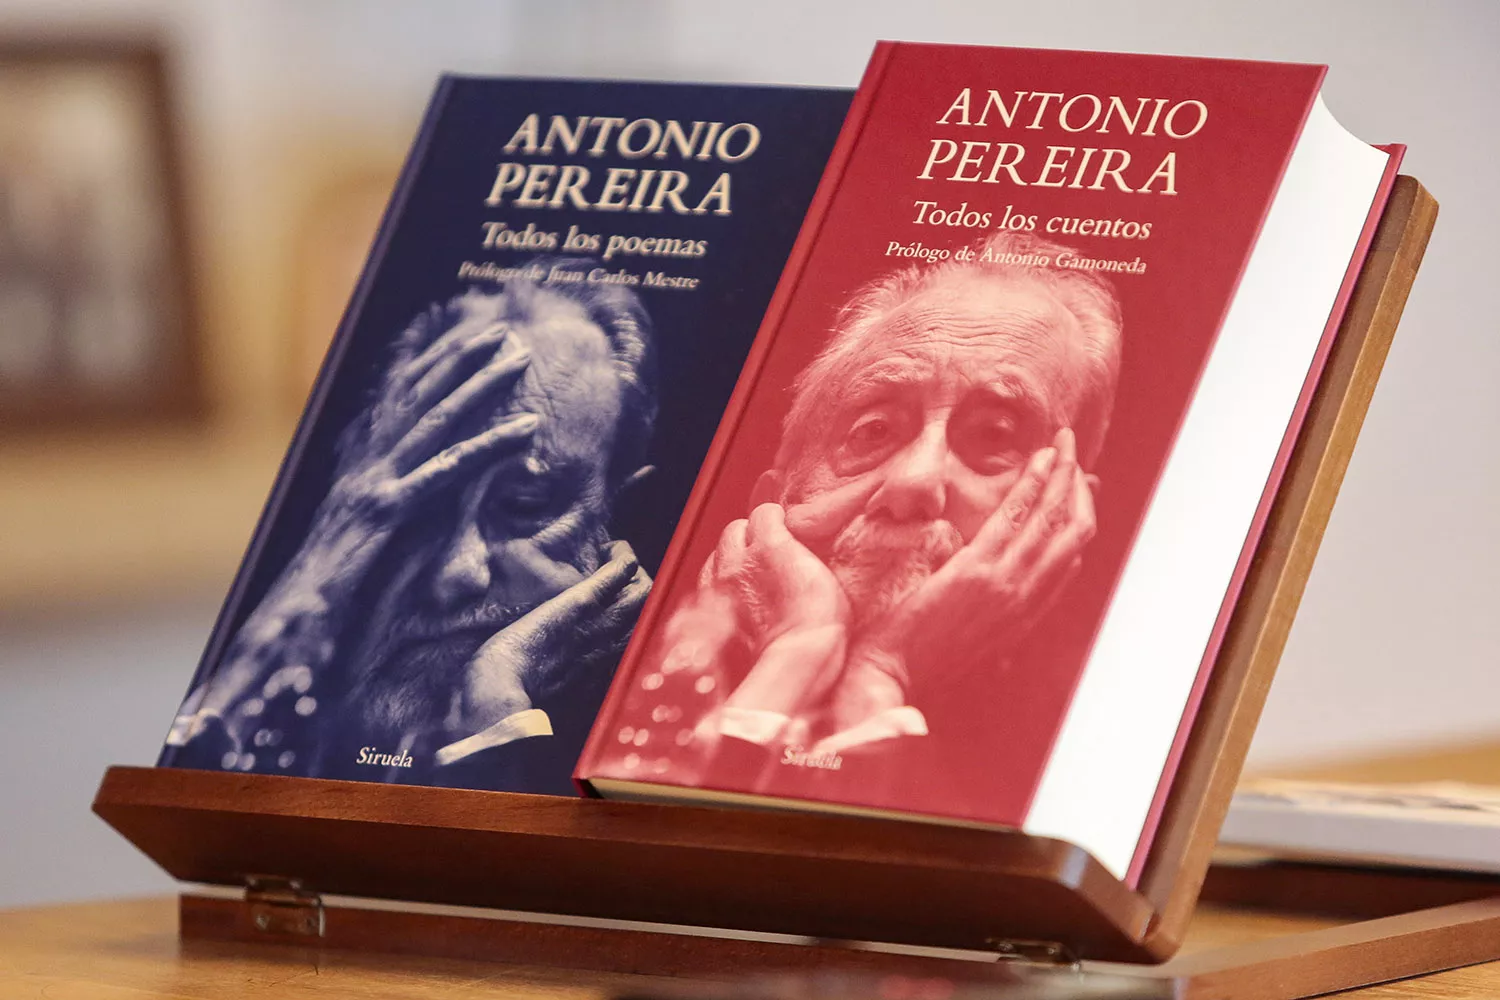 La Fundación Antonio Pereira dona varios ejemplares de ‘Todos los poemas’ y ‘Todos los cuentos’ a la Red de Bibliotecas de Panamá